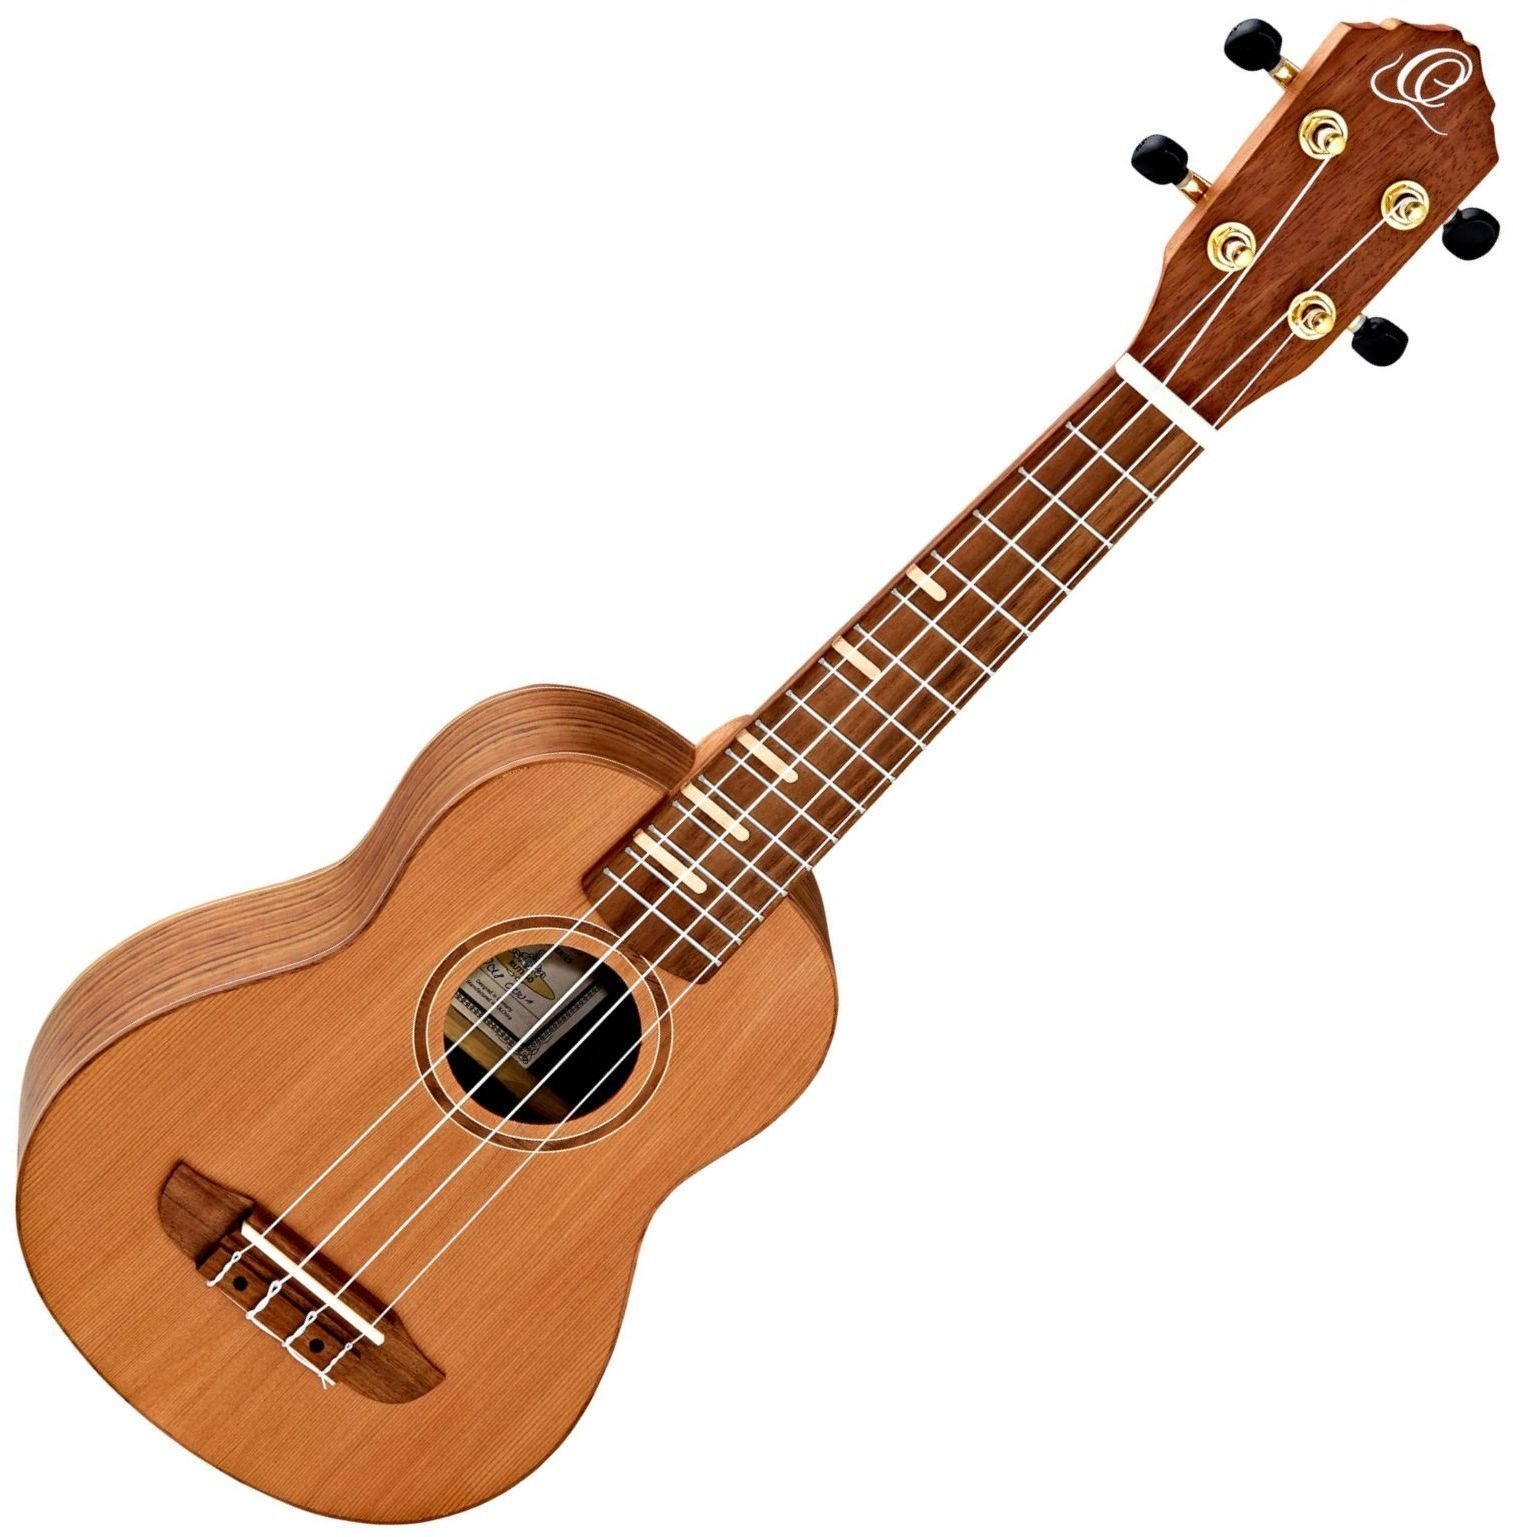 Sopran ukulele Ortega RUTI-SO Sopran ukulele Natural